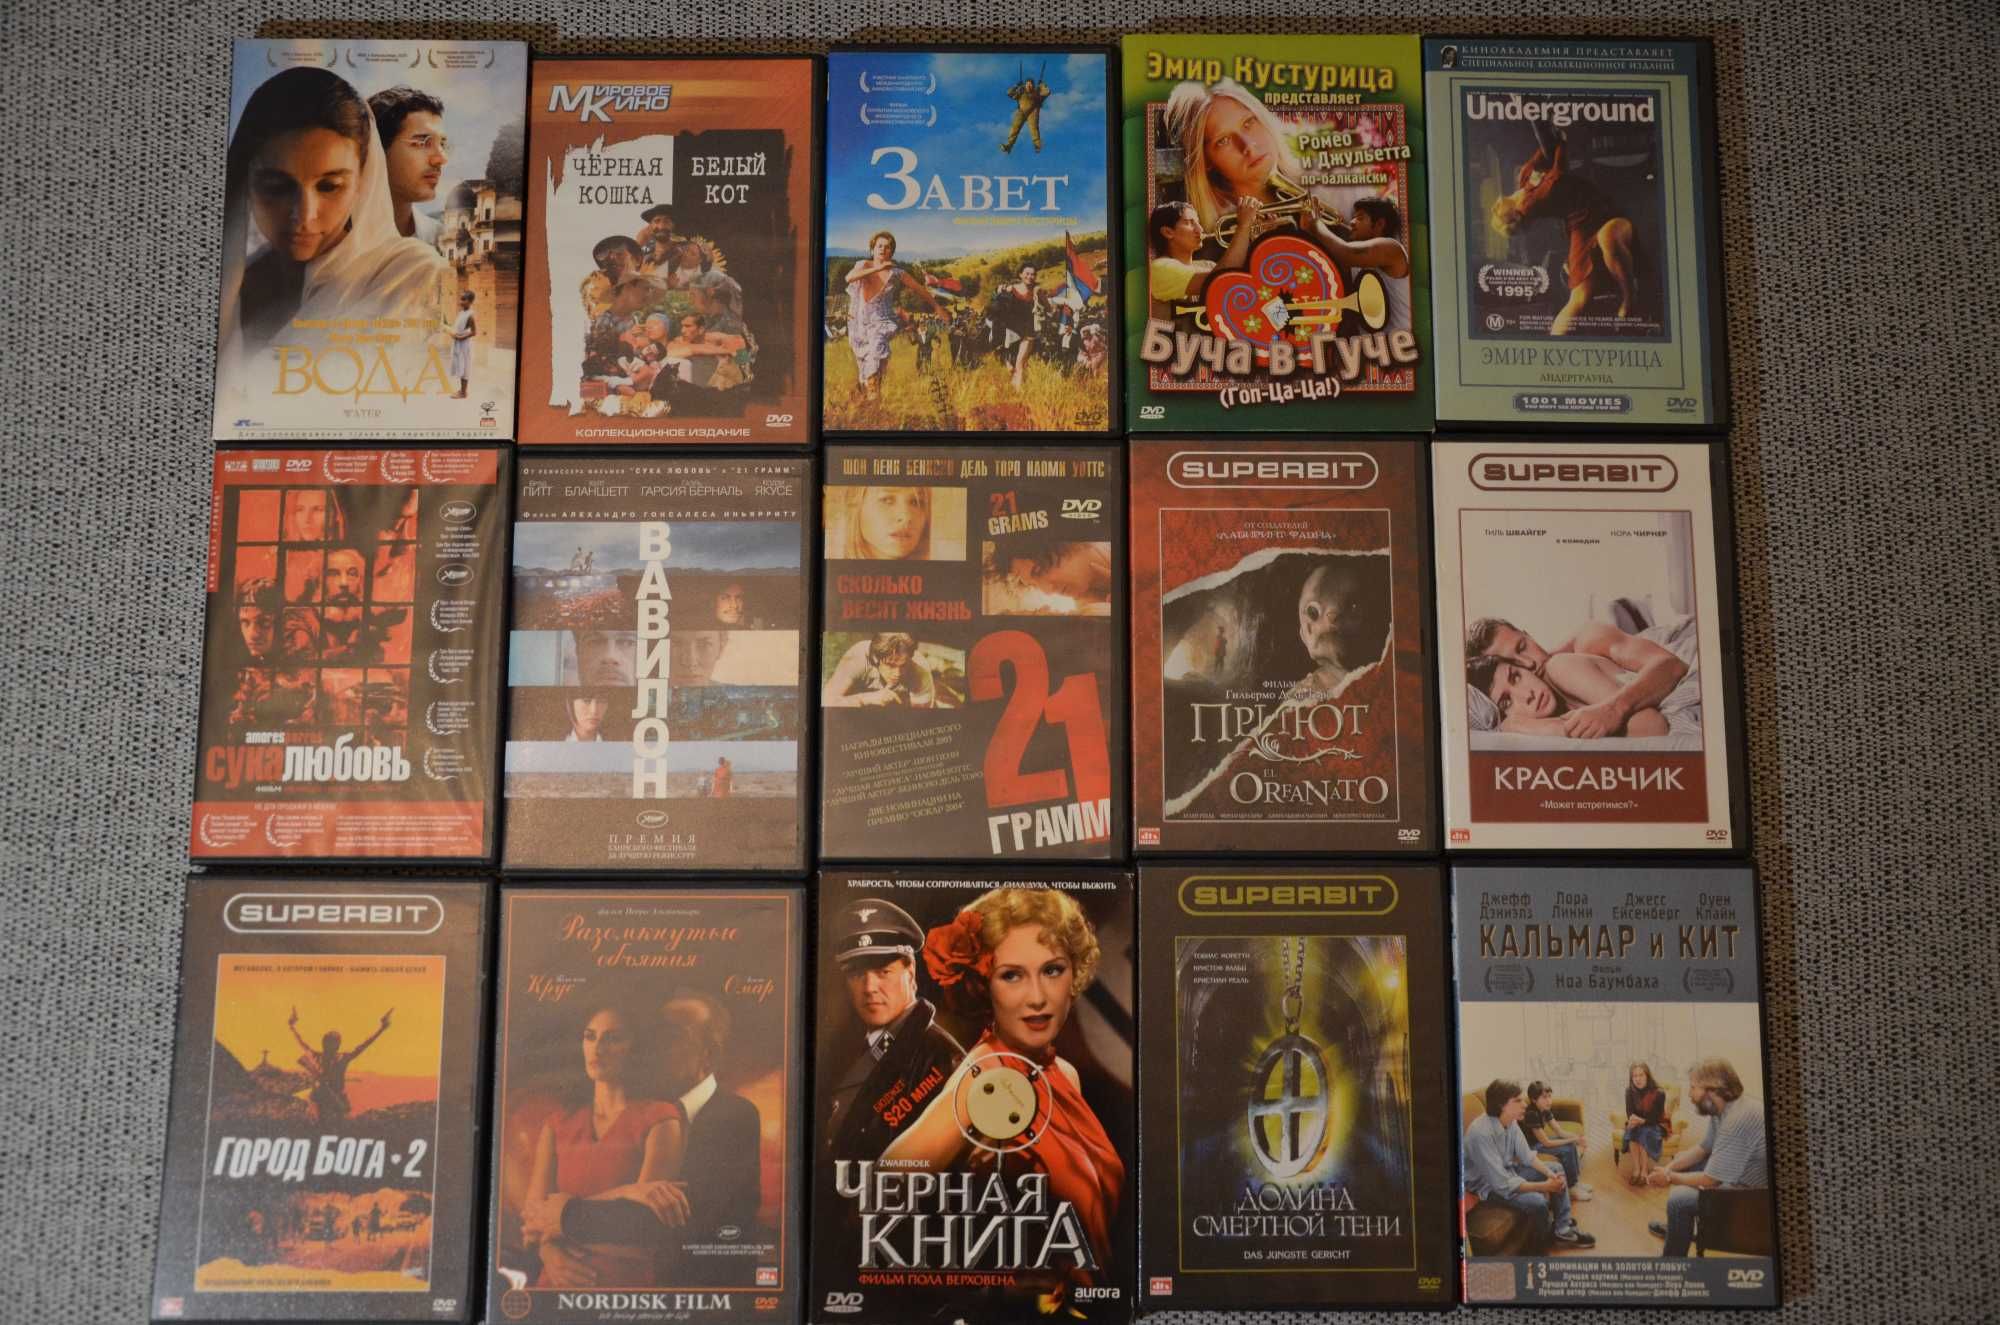 Коллекция редких европейских фильмов на DVD (арт-хаус)